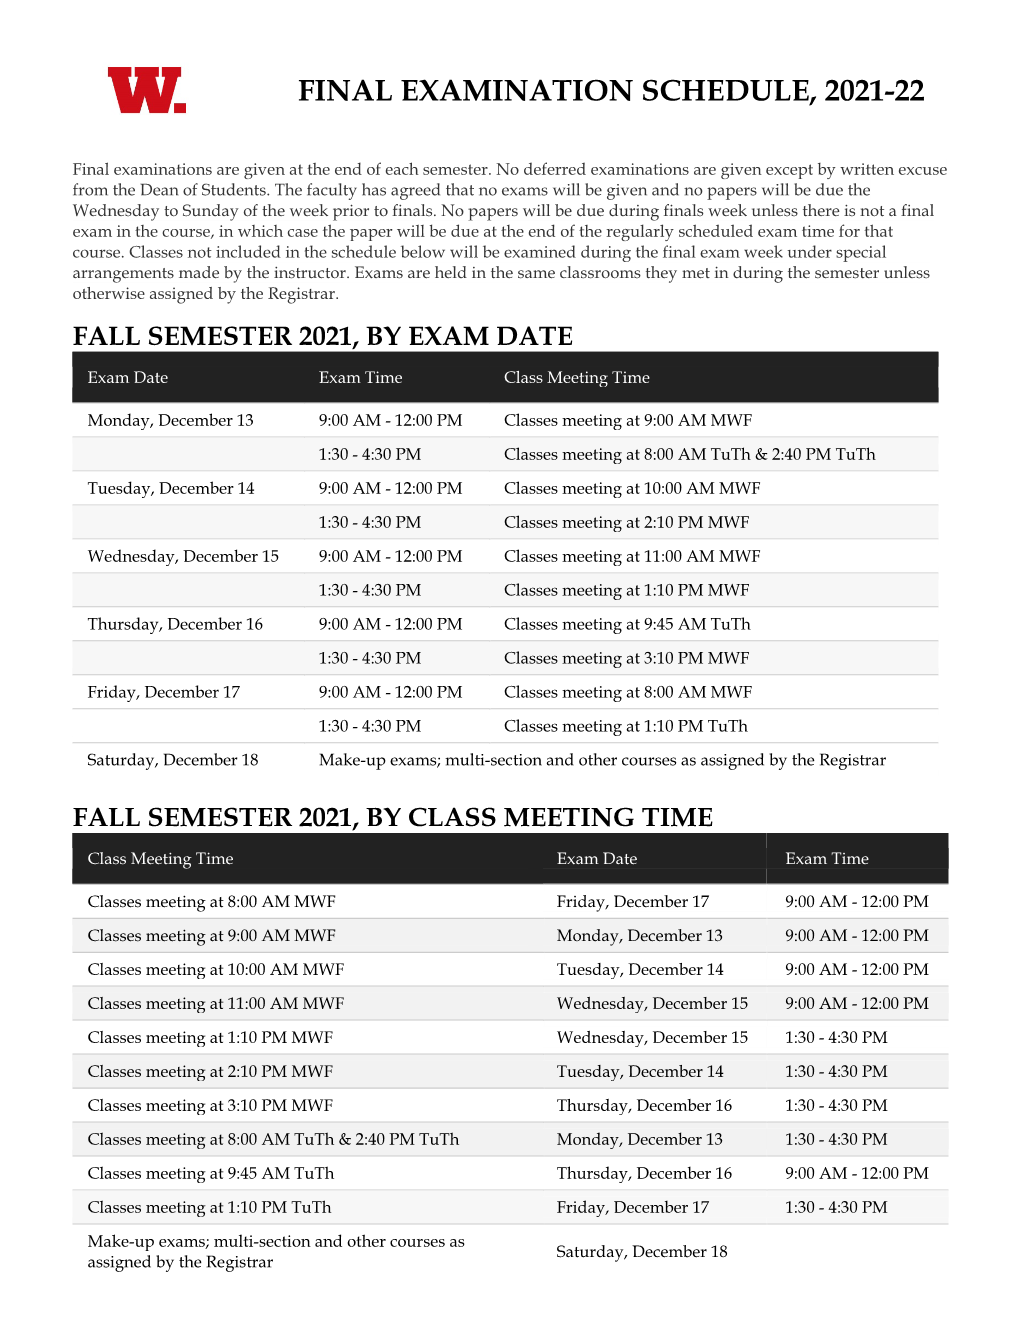 Final Examination Schedule, 2021-22